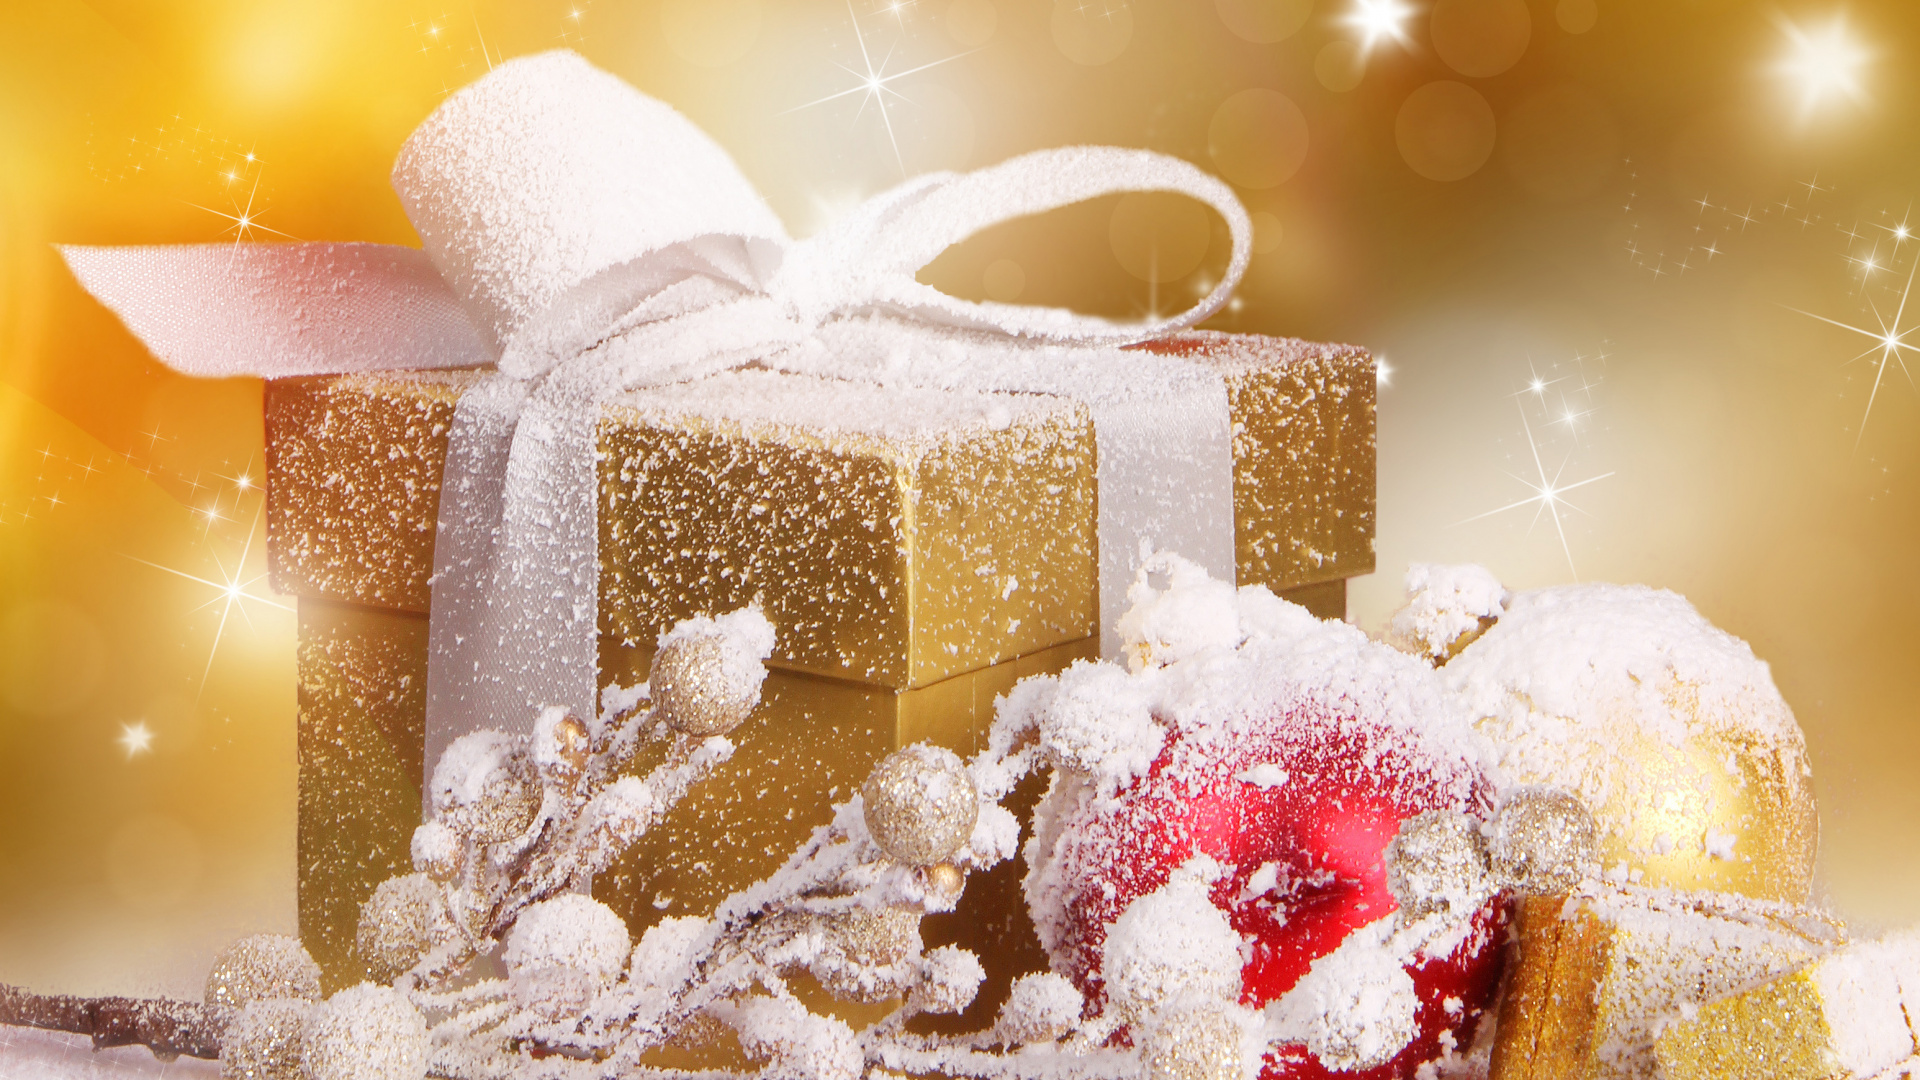 礼物, 圣诞节礼物, 圣诞节那天, 食品, 圣诞节 壁纸 1920x1080 允许